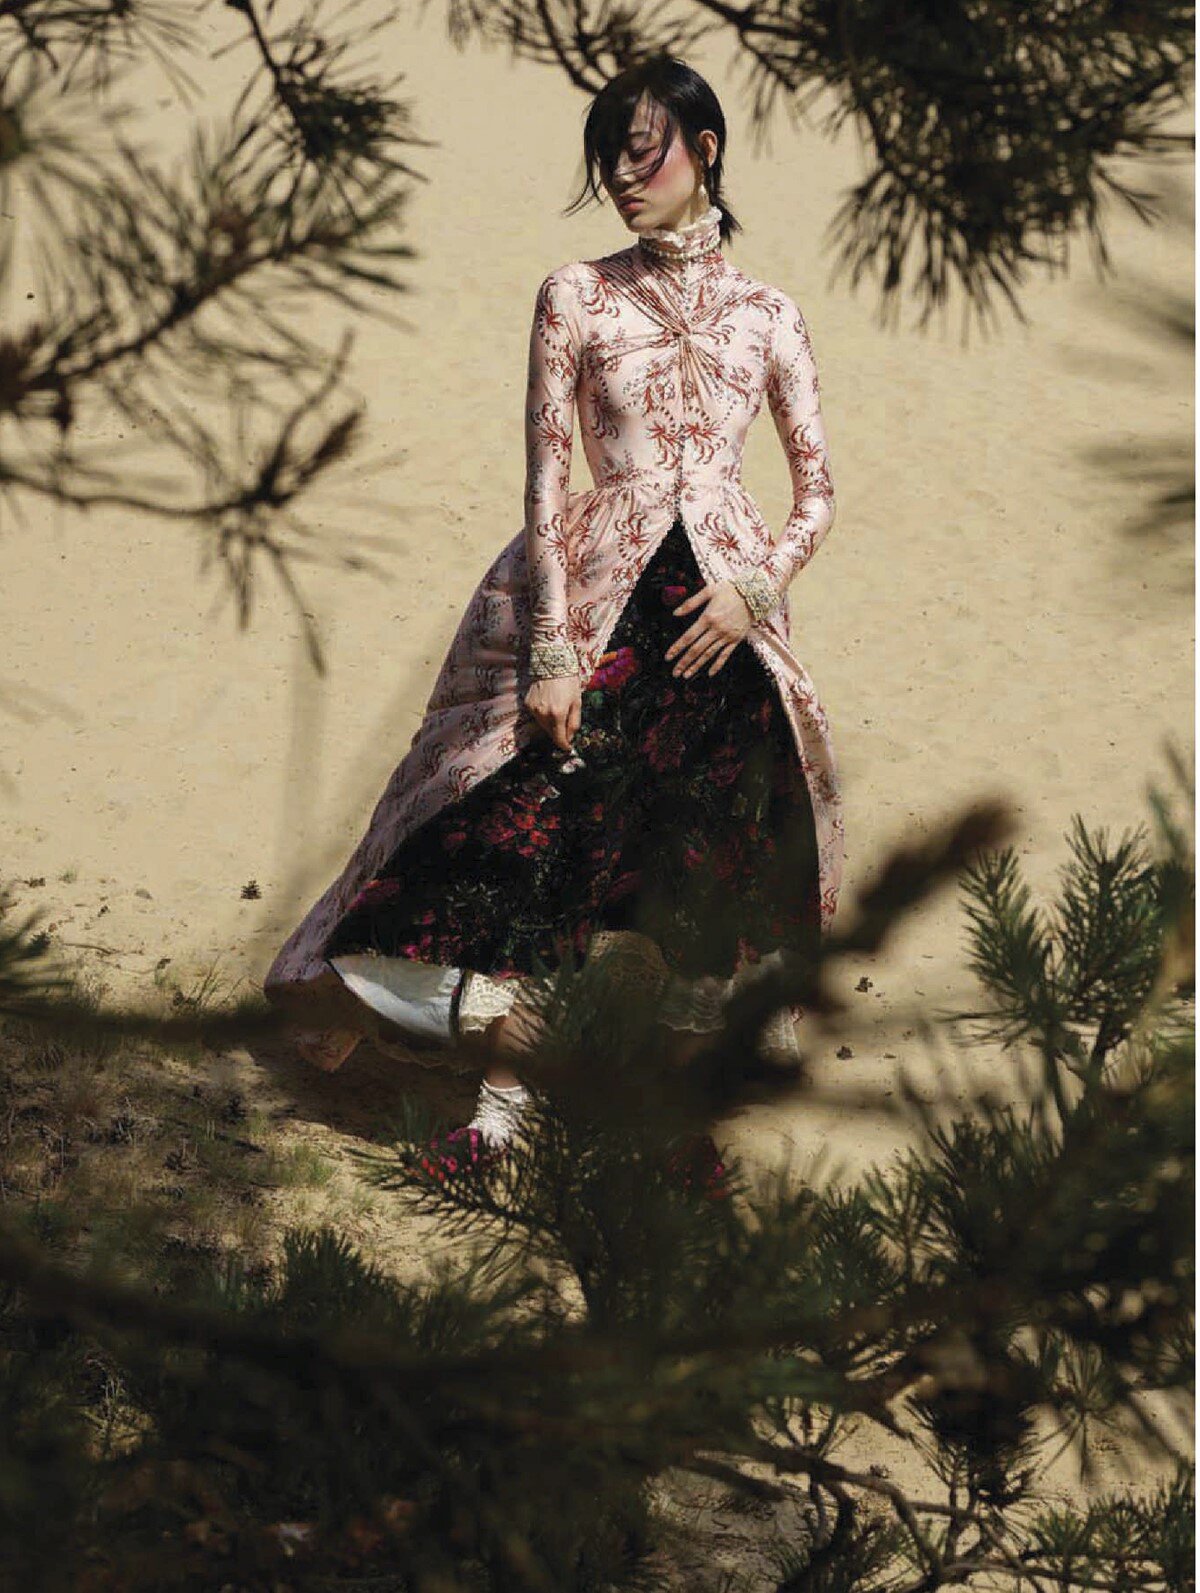 Sora Choi by Viviane Sassen for Vogue China December 2019 (9).jpg